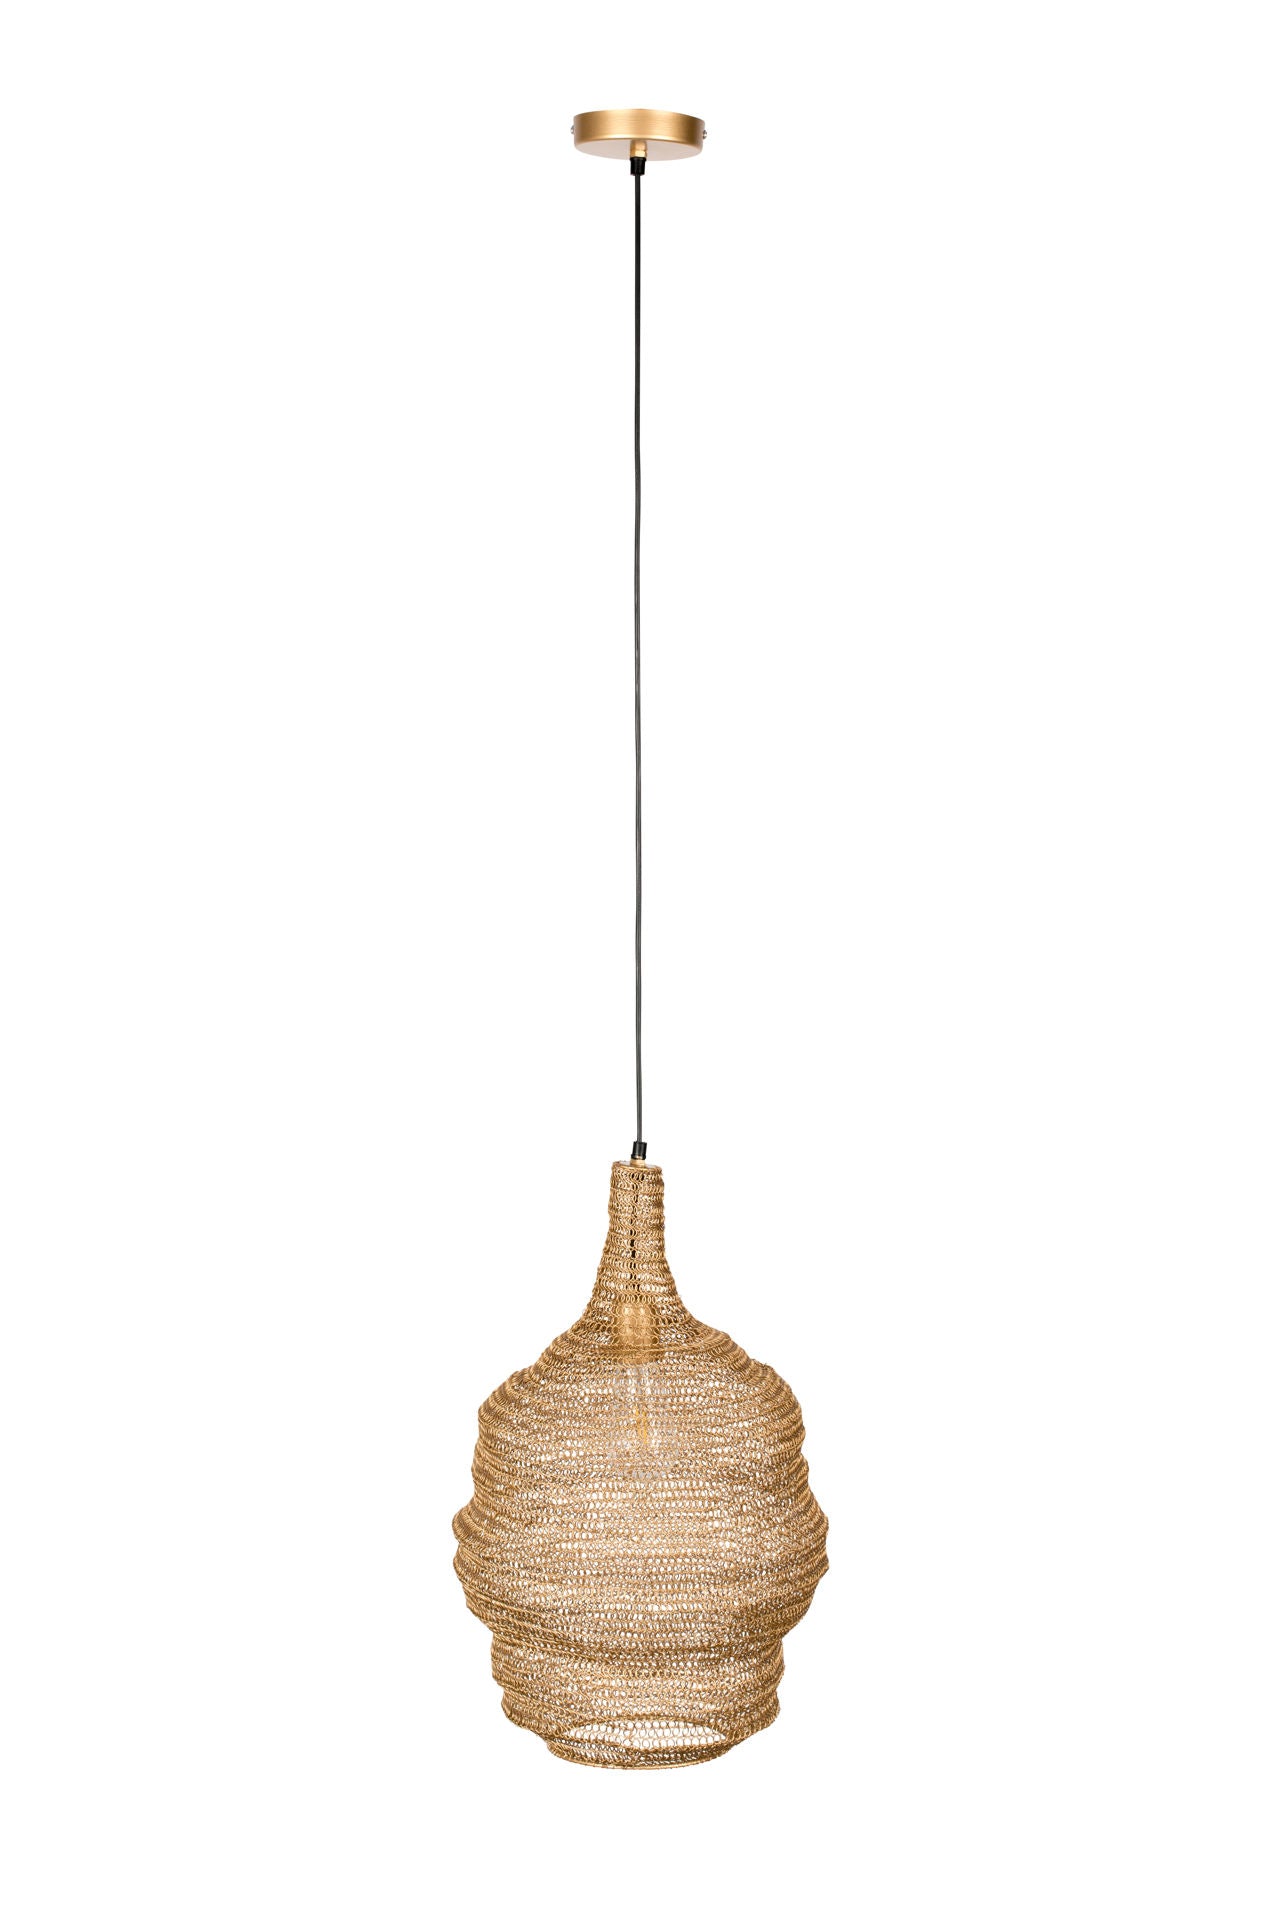 Lampe suspendue Destrehan de Nancy - Moderne - Laiton, Noir - Fer, Pvc - 37 cm x 37 cm x 155 cm